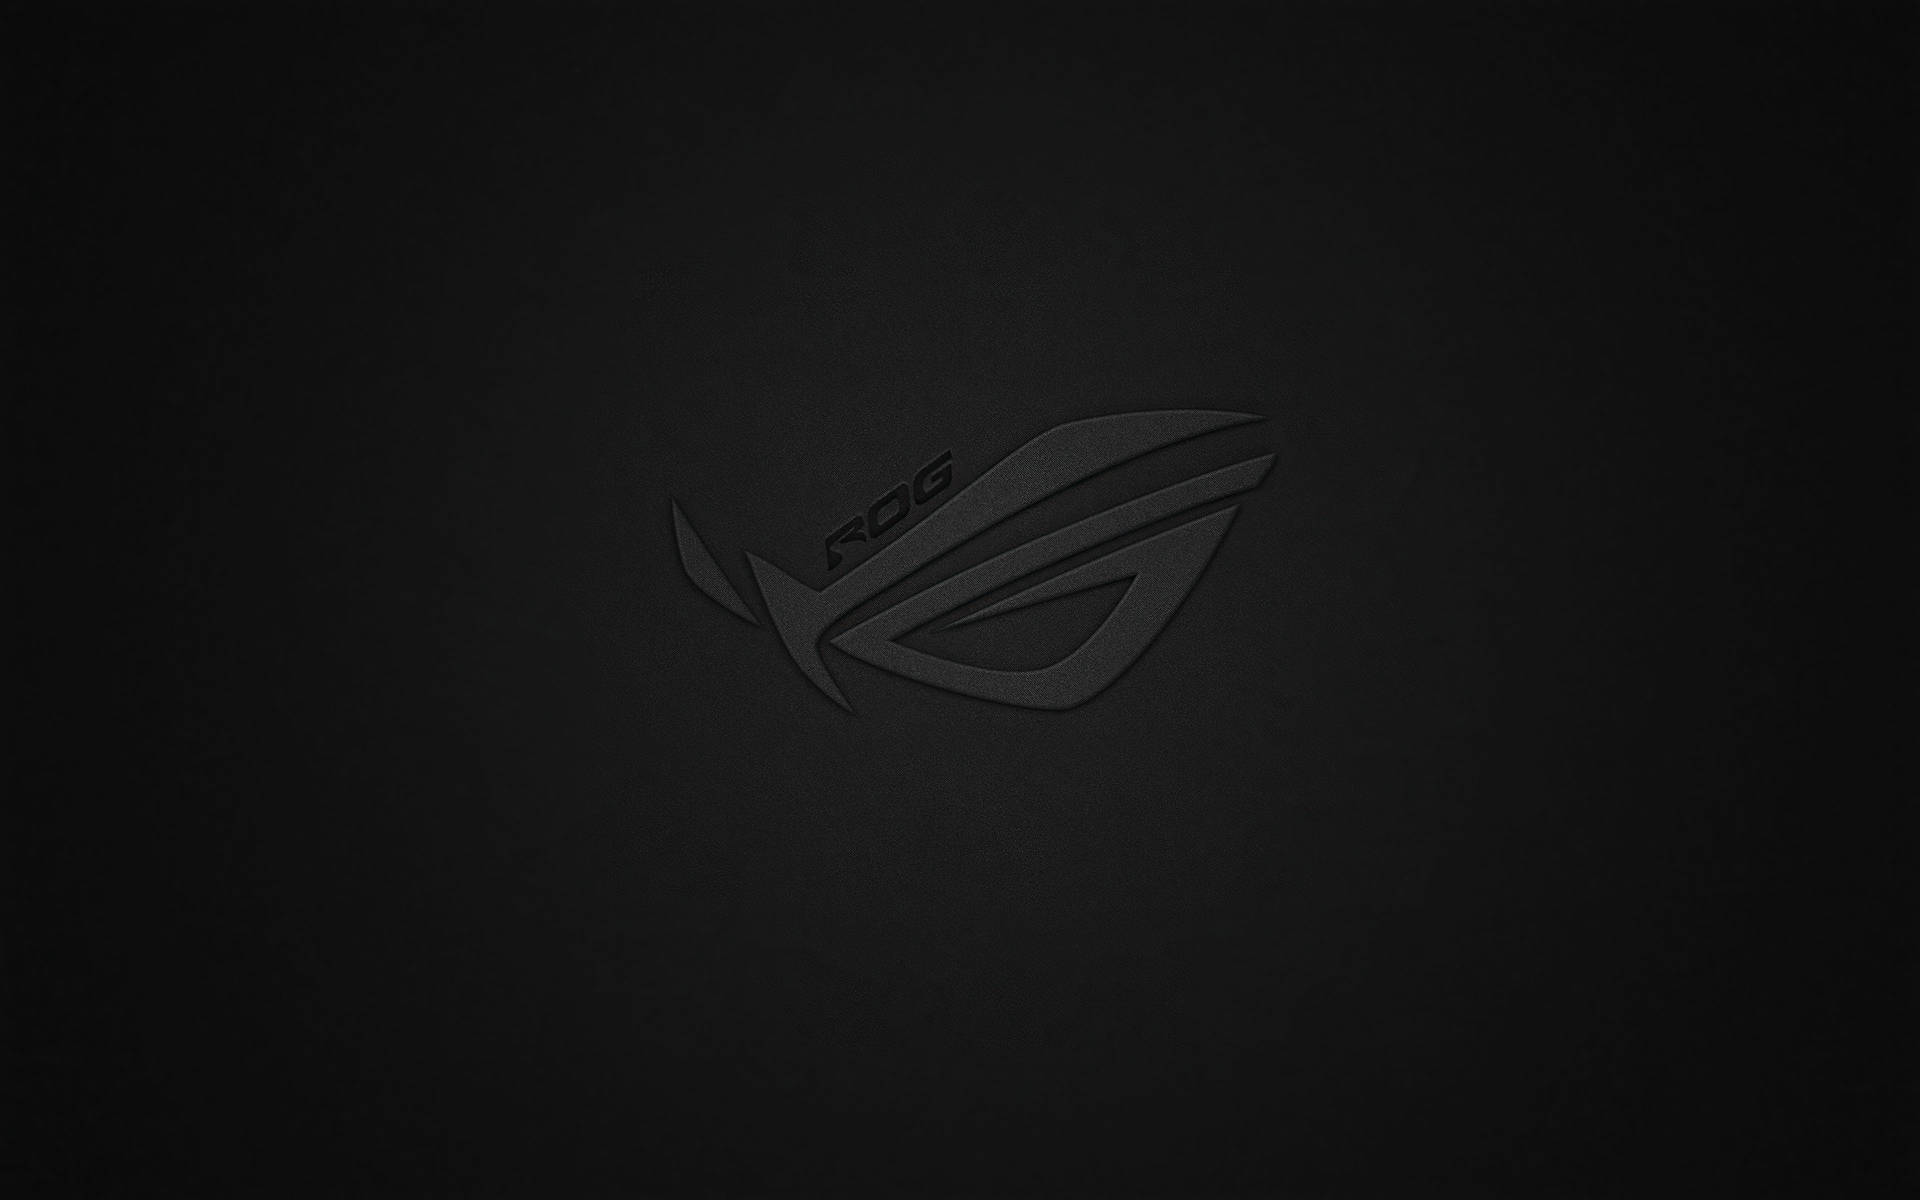 Asus Rog 4k Gaming Black Logo On Black Wallpaper